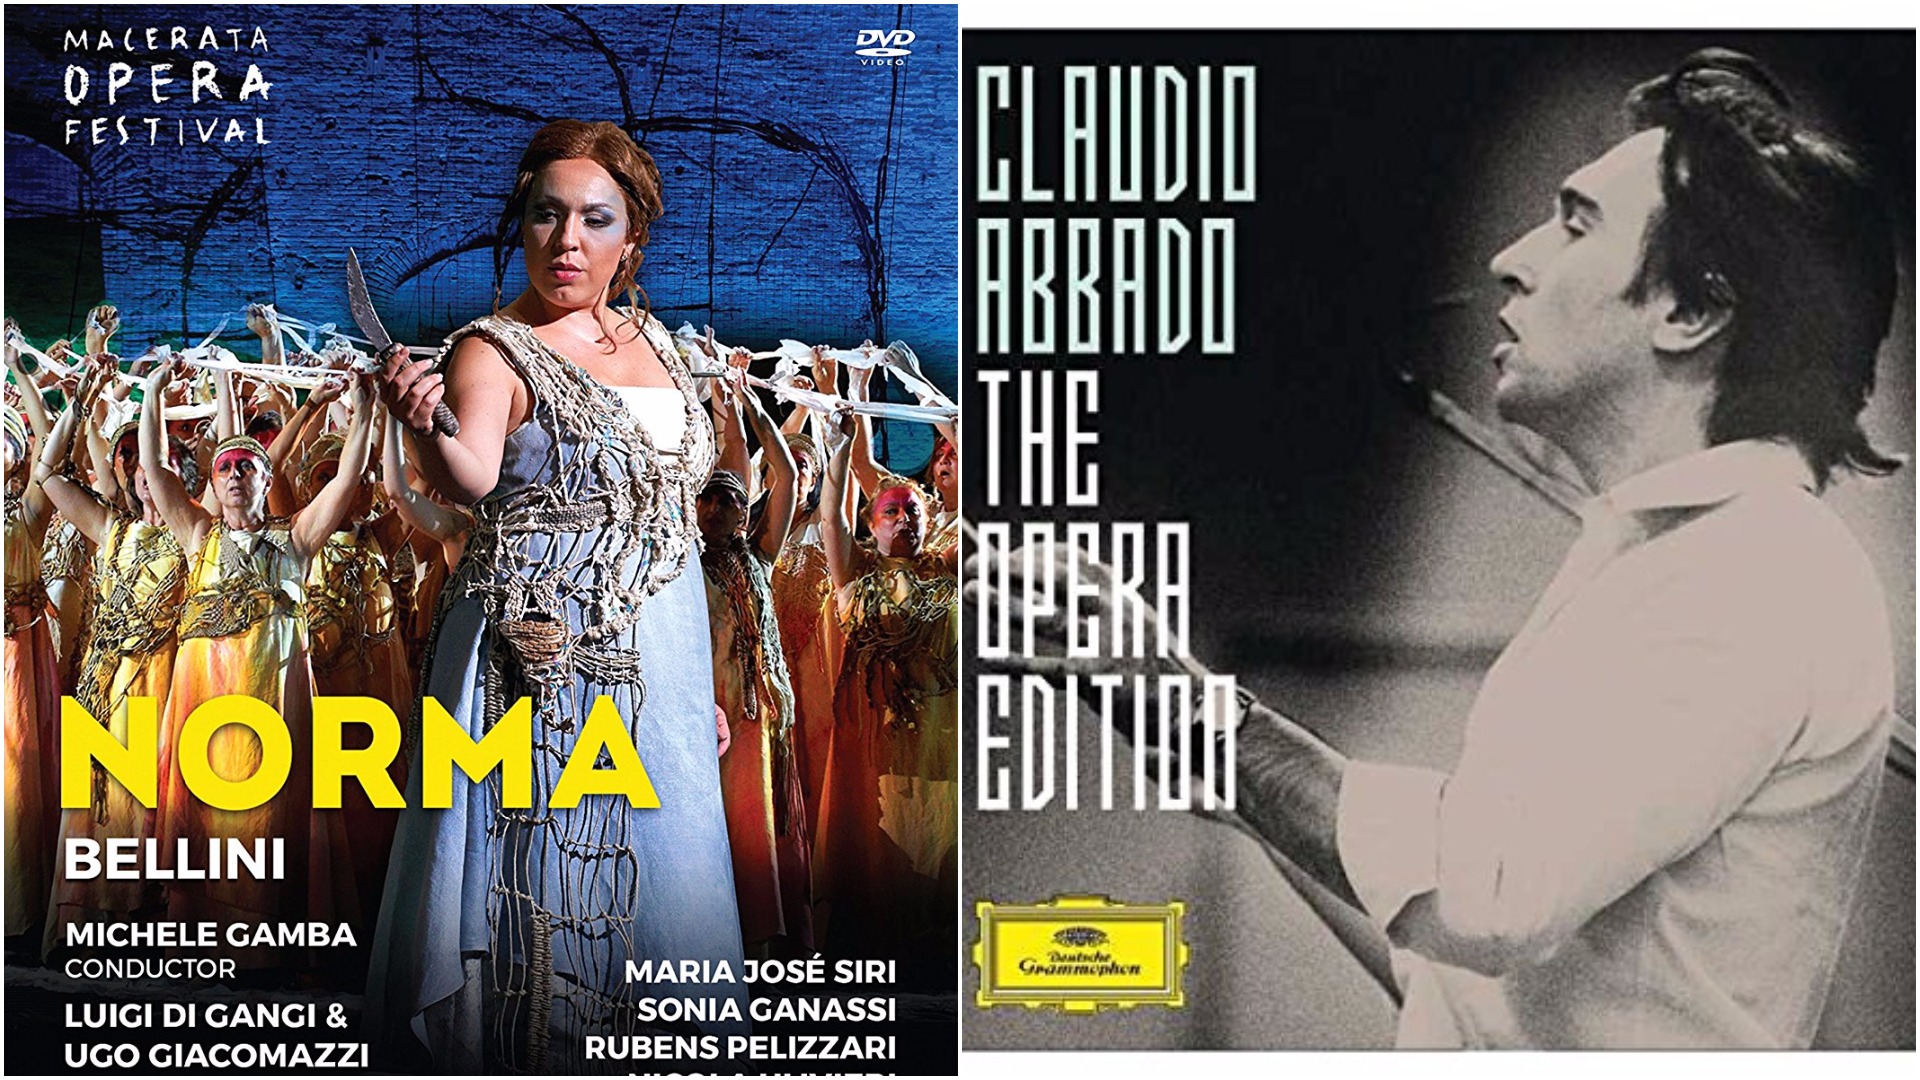 CD / DVD Releases (Week of Oct. of 8): María José Sirí & Claudio